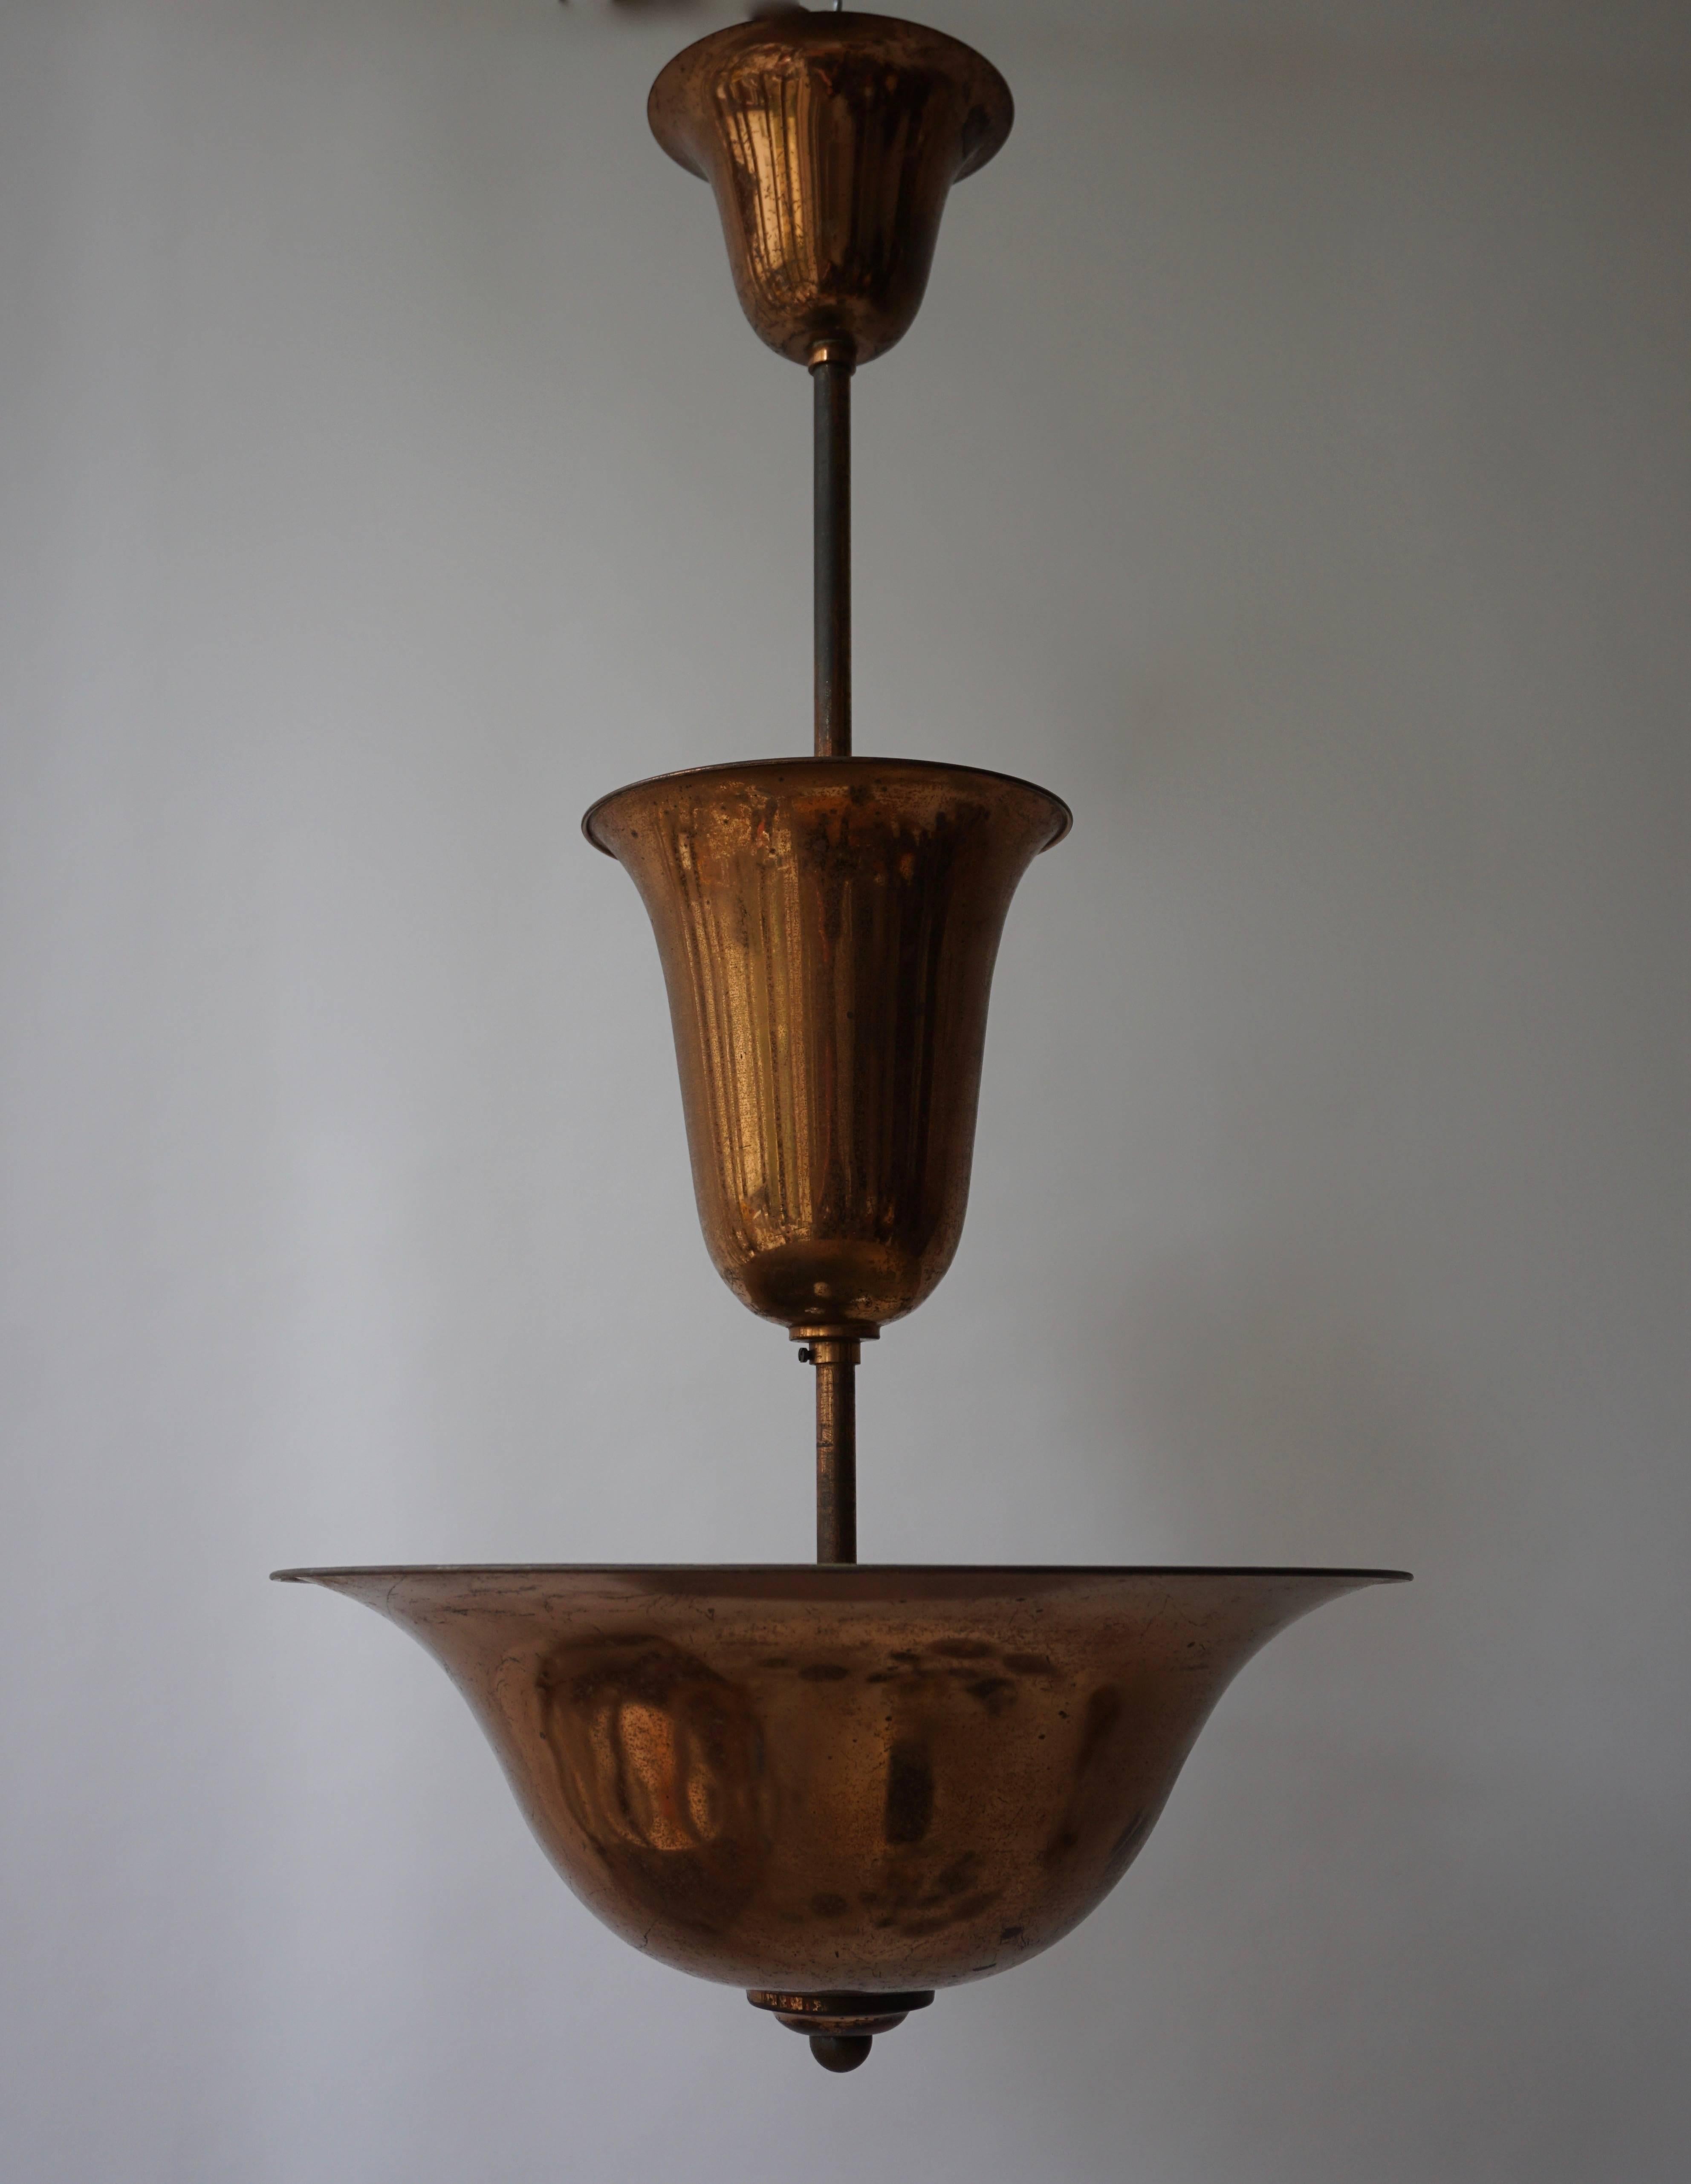 Art Deco copper chandelier.
Measures: Diameter 45 cm.
Height 85 cm.